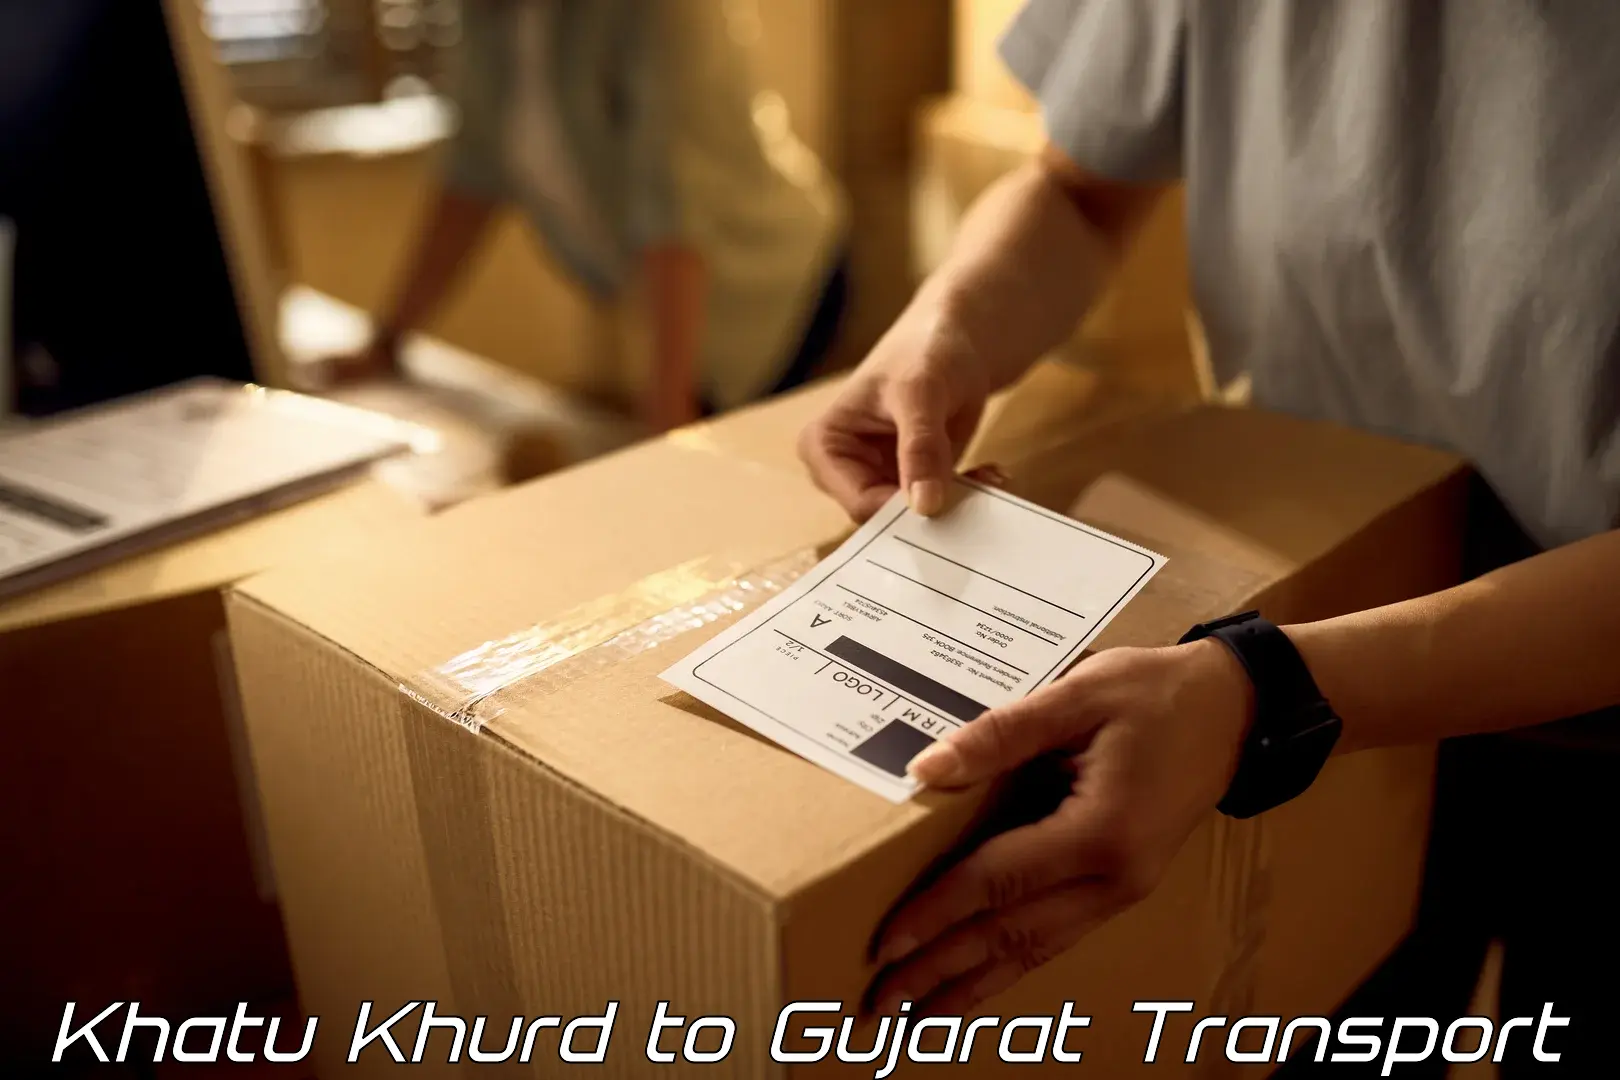 Container transport service Khatu Khurd to IIIT Vadodara